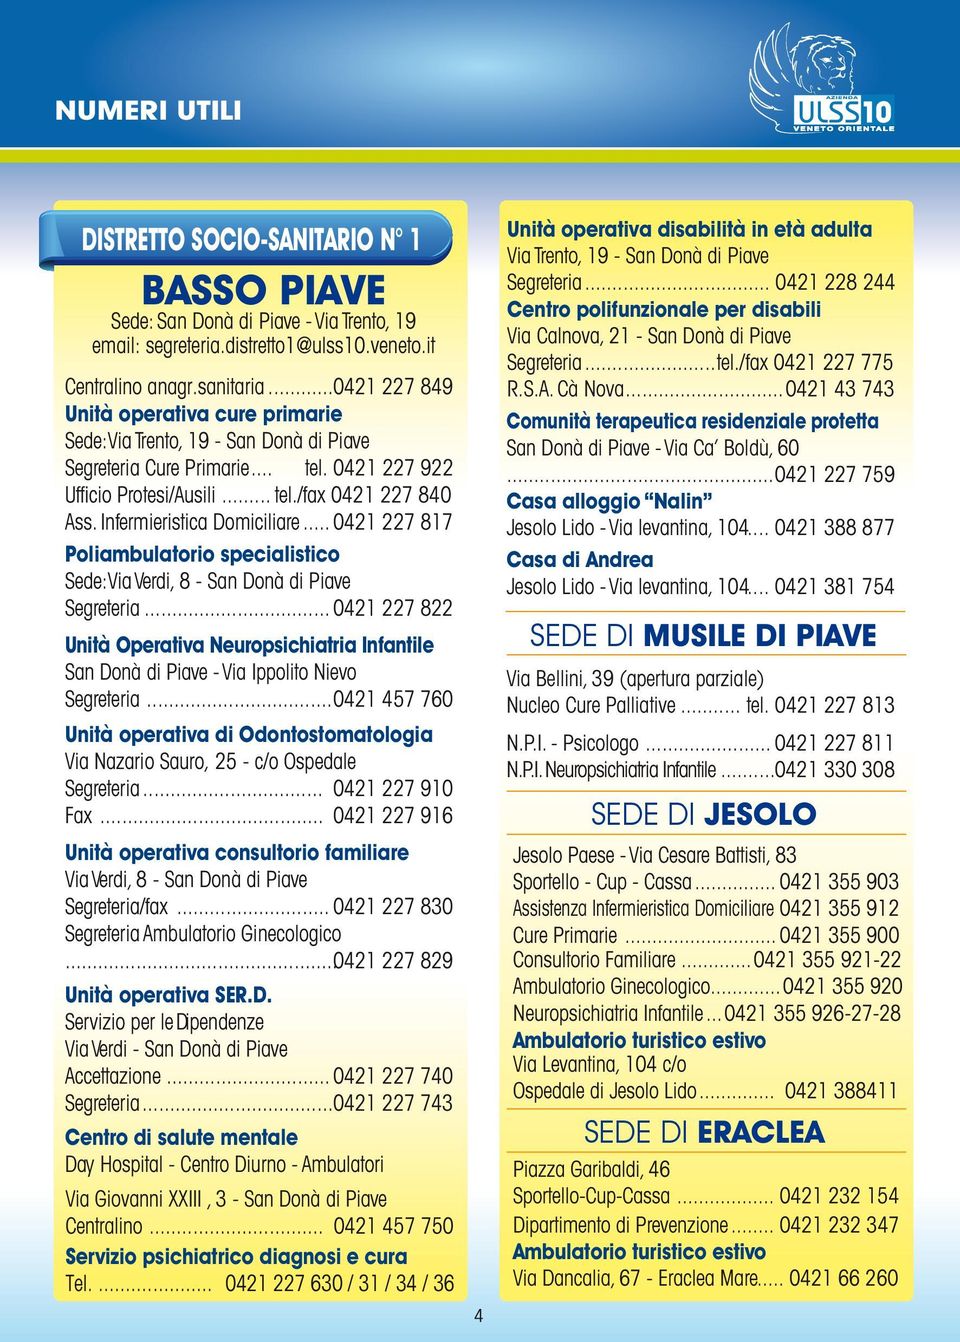 Infermieristica Domiciliare... 0421 227 817 Poliambulatorio specialistico Sede: Via Verdi, 8 - San Donà di Piave Segreteria.